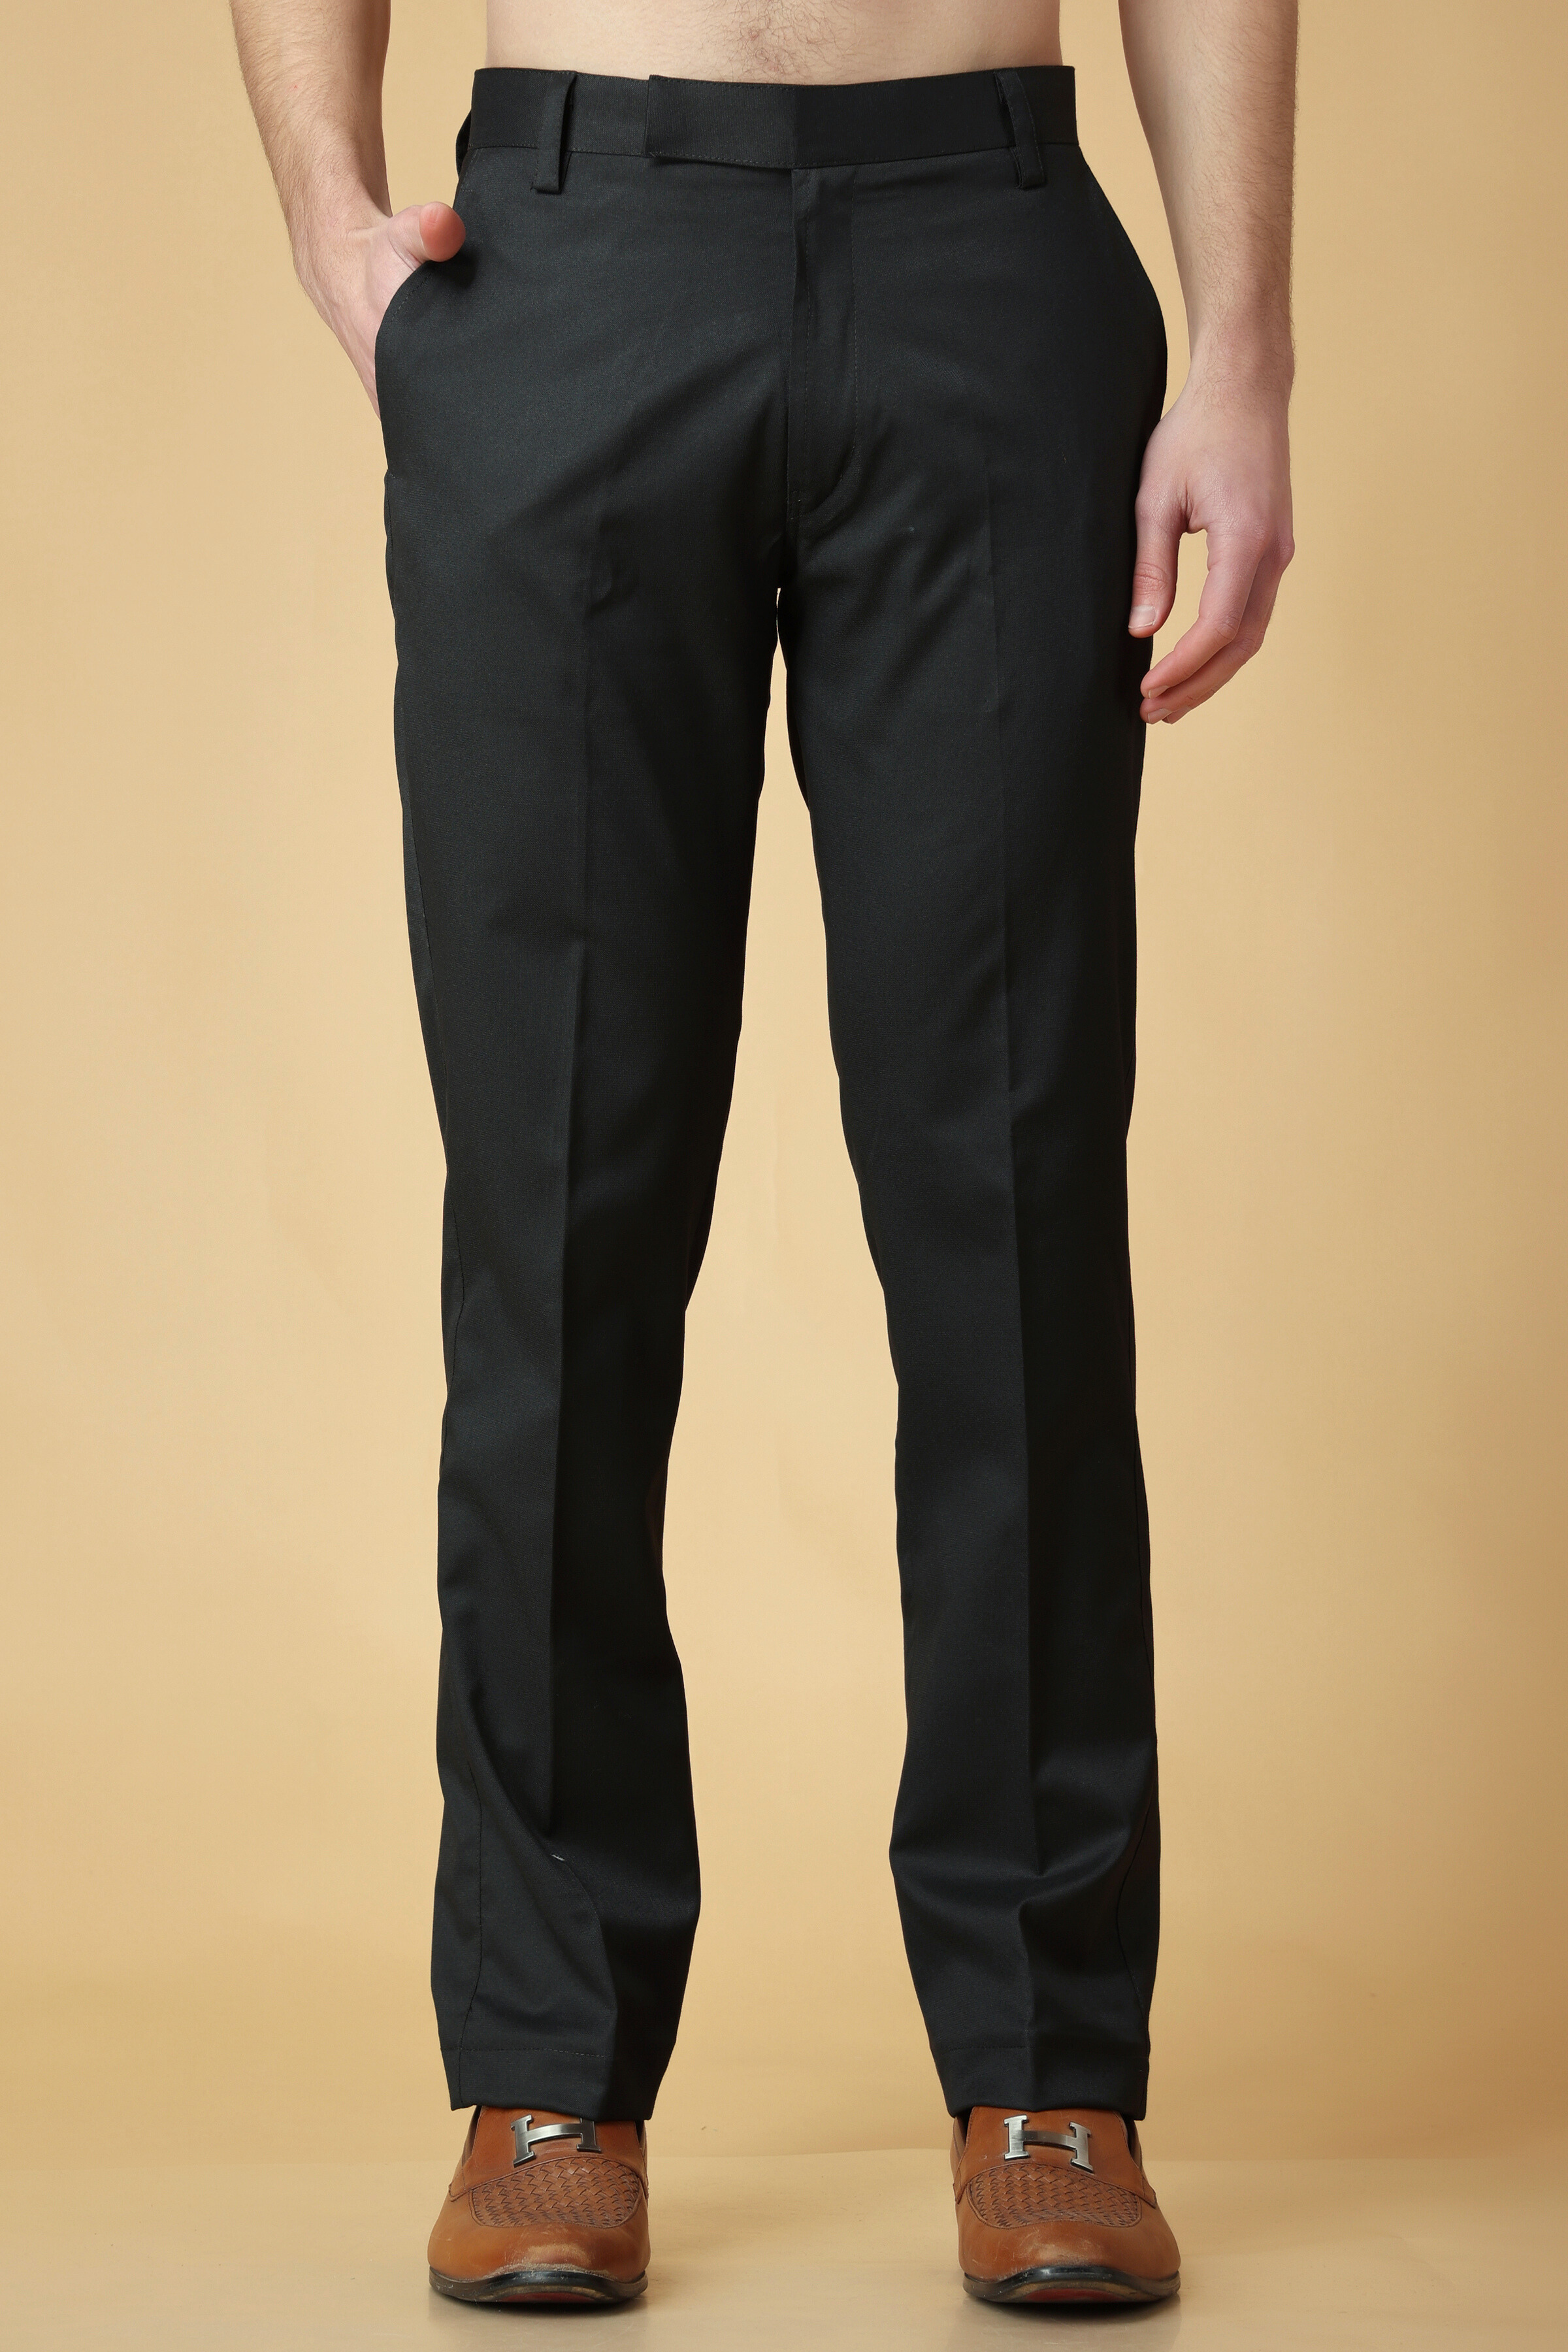 Buy Black Formal Pants & Formal Pants For Men - Apella